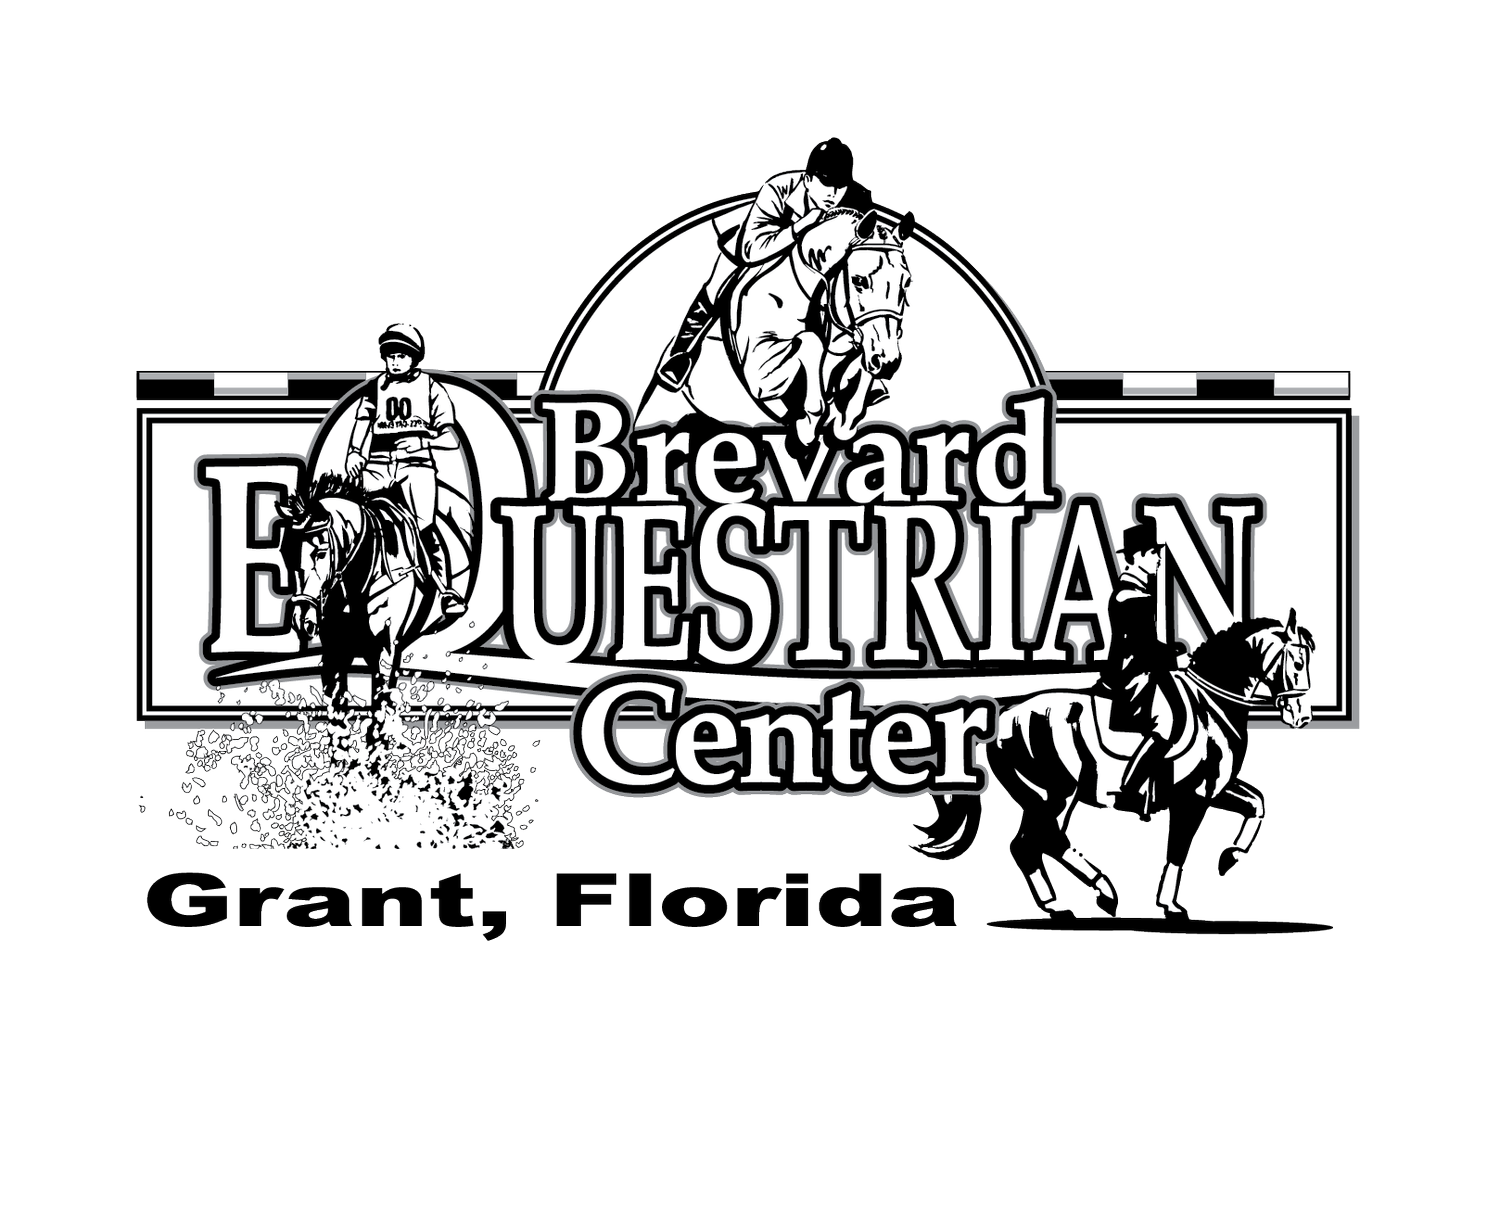 Brevard Equestrian Center